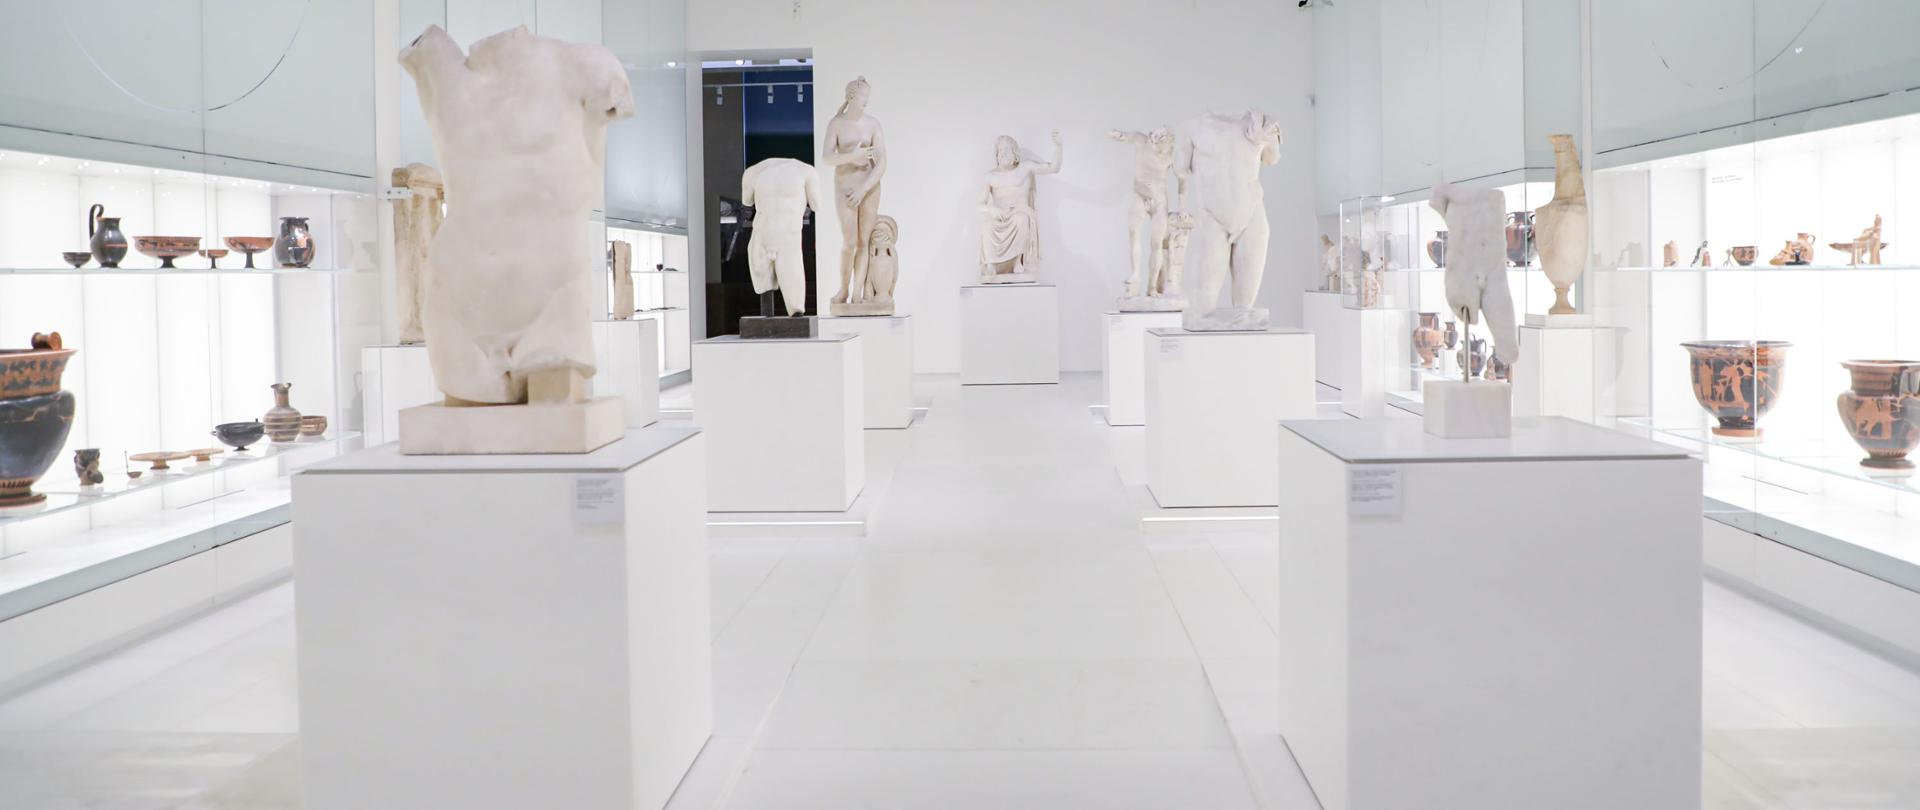 Galeria Sztuki Starożytnej w Muzeum Narodowym w Warszawie gotowa na otwarcie, fot. Danuta Matloch